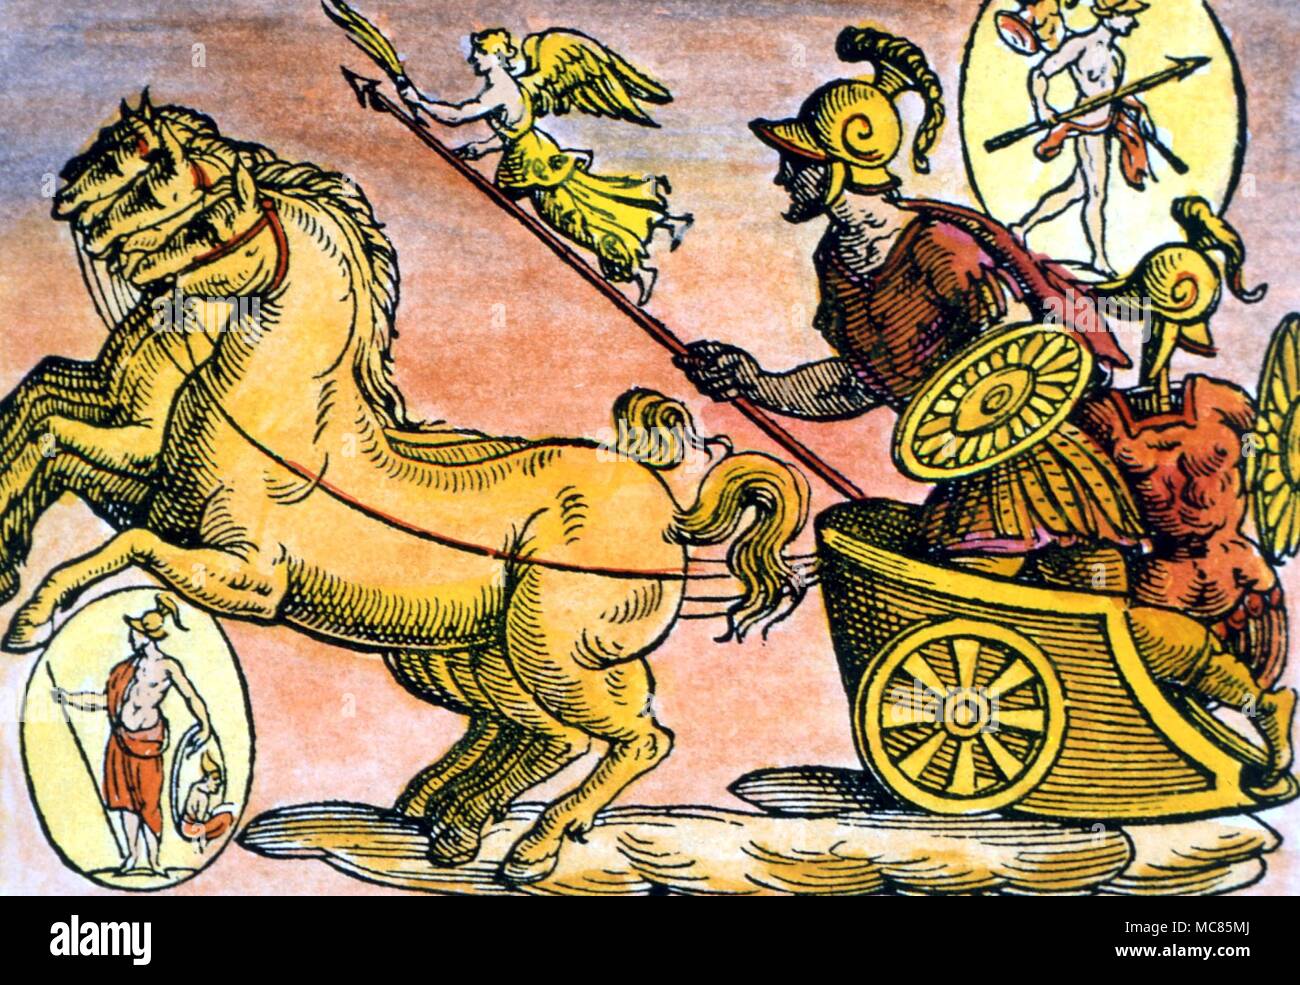 La mythologie grecque le dieu Mars, avec sa lance a encouragé l'avant par la victoire, dans son char tiré par des chevaux. De Natalis Comitis, 'Mythologiae, Lib. V', 17e siècle. édition collection privage Banque D'Images